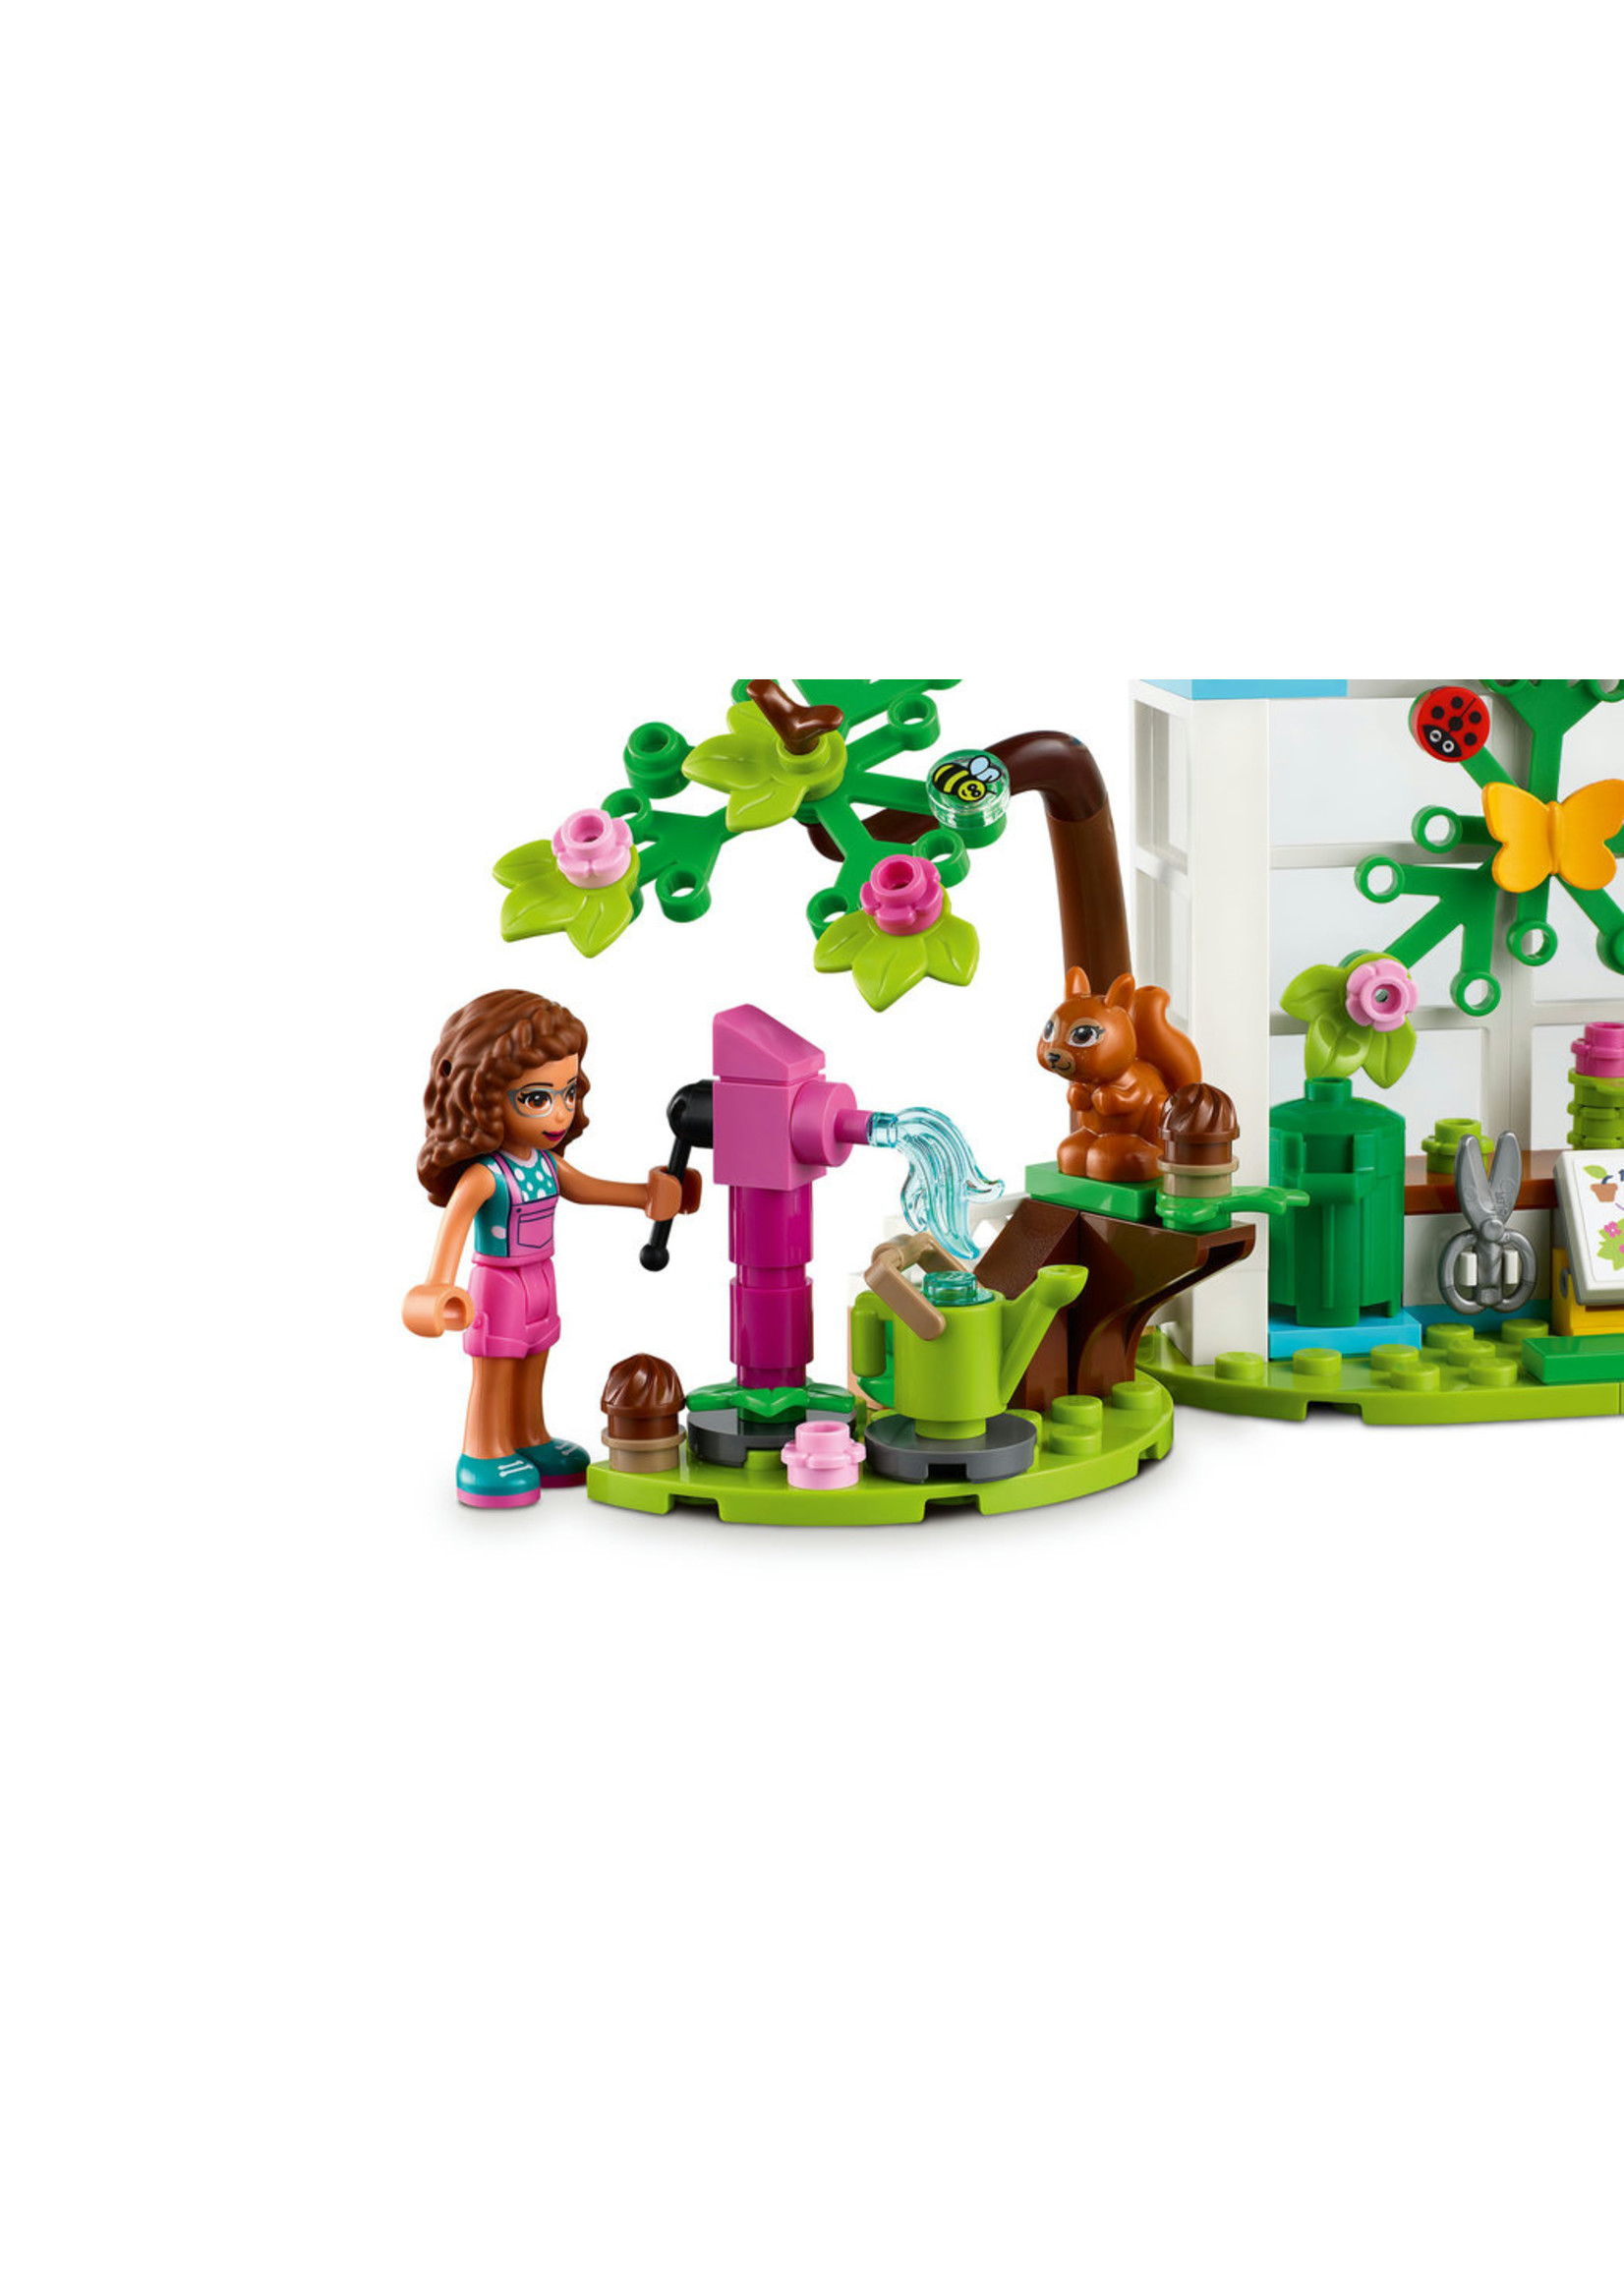 LEGO 41707 - Tree-Planting Vehicle